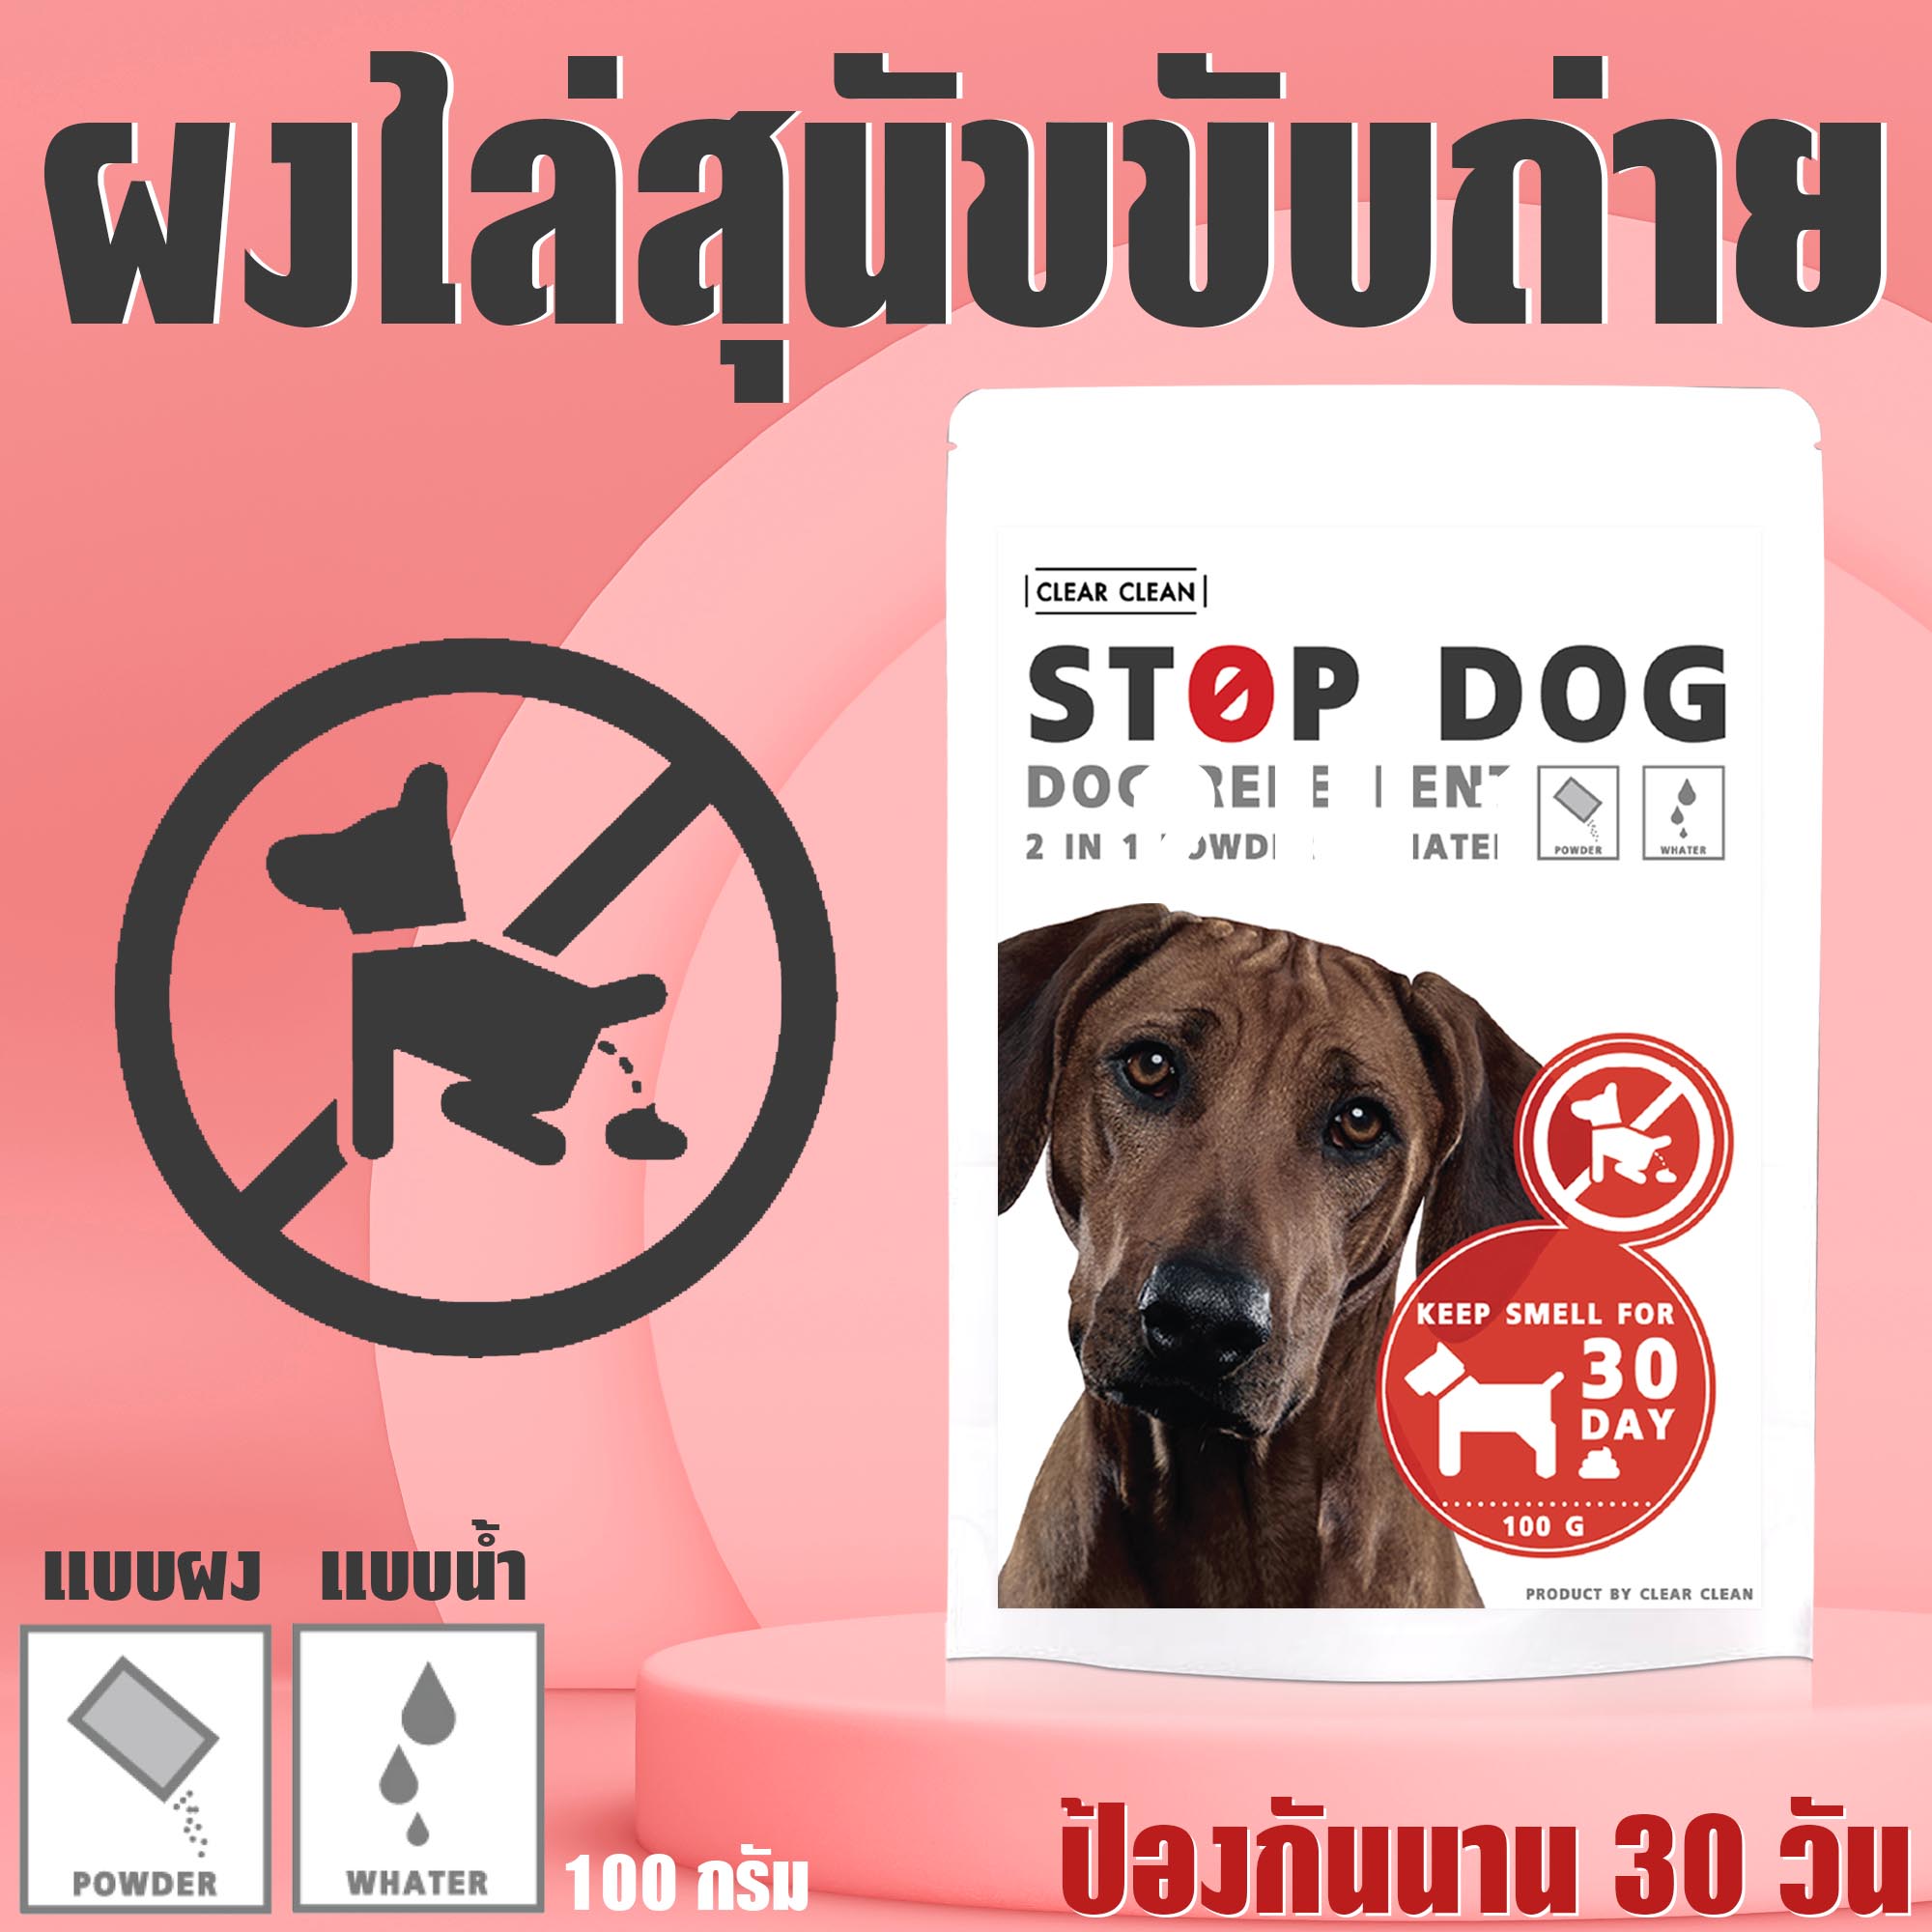 ผงไล่หมา STOP DOG ป้องกันสุนัขขับถ่าย 1 ซอง เพียงโรยบริเวณที่ต้องการ